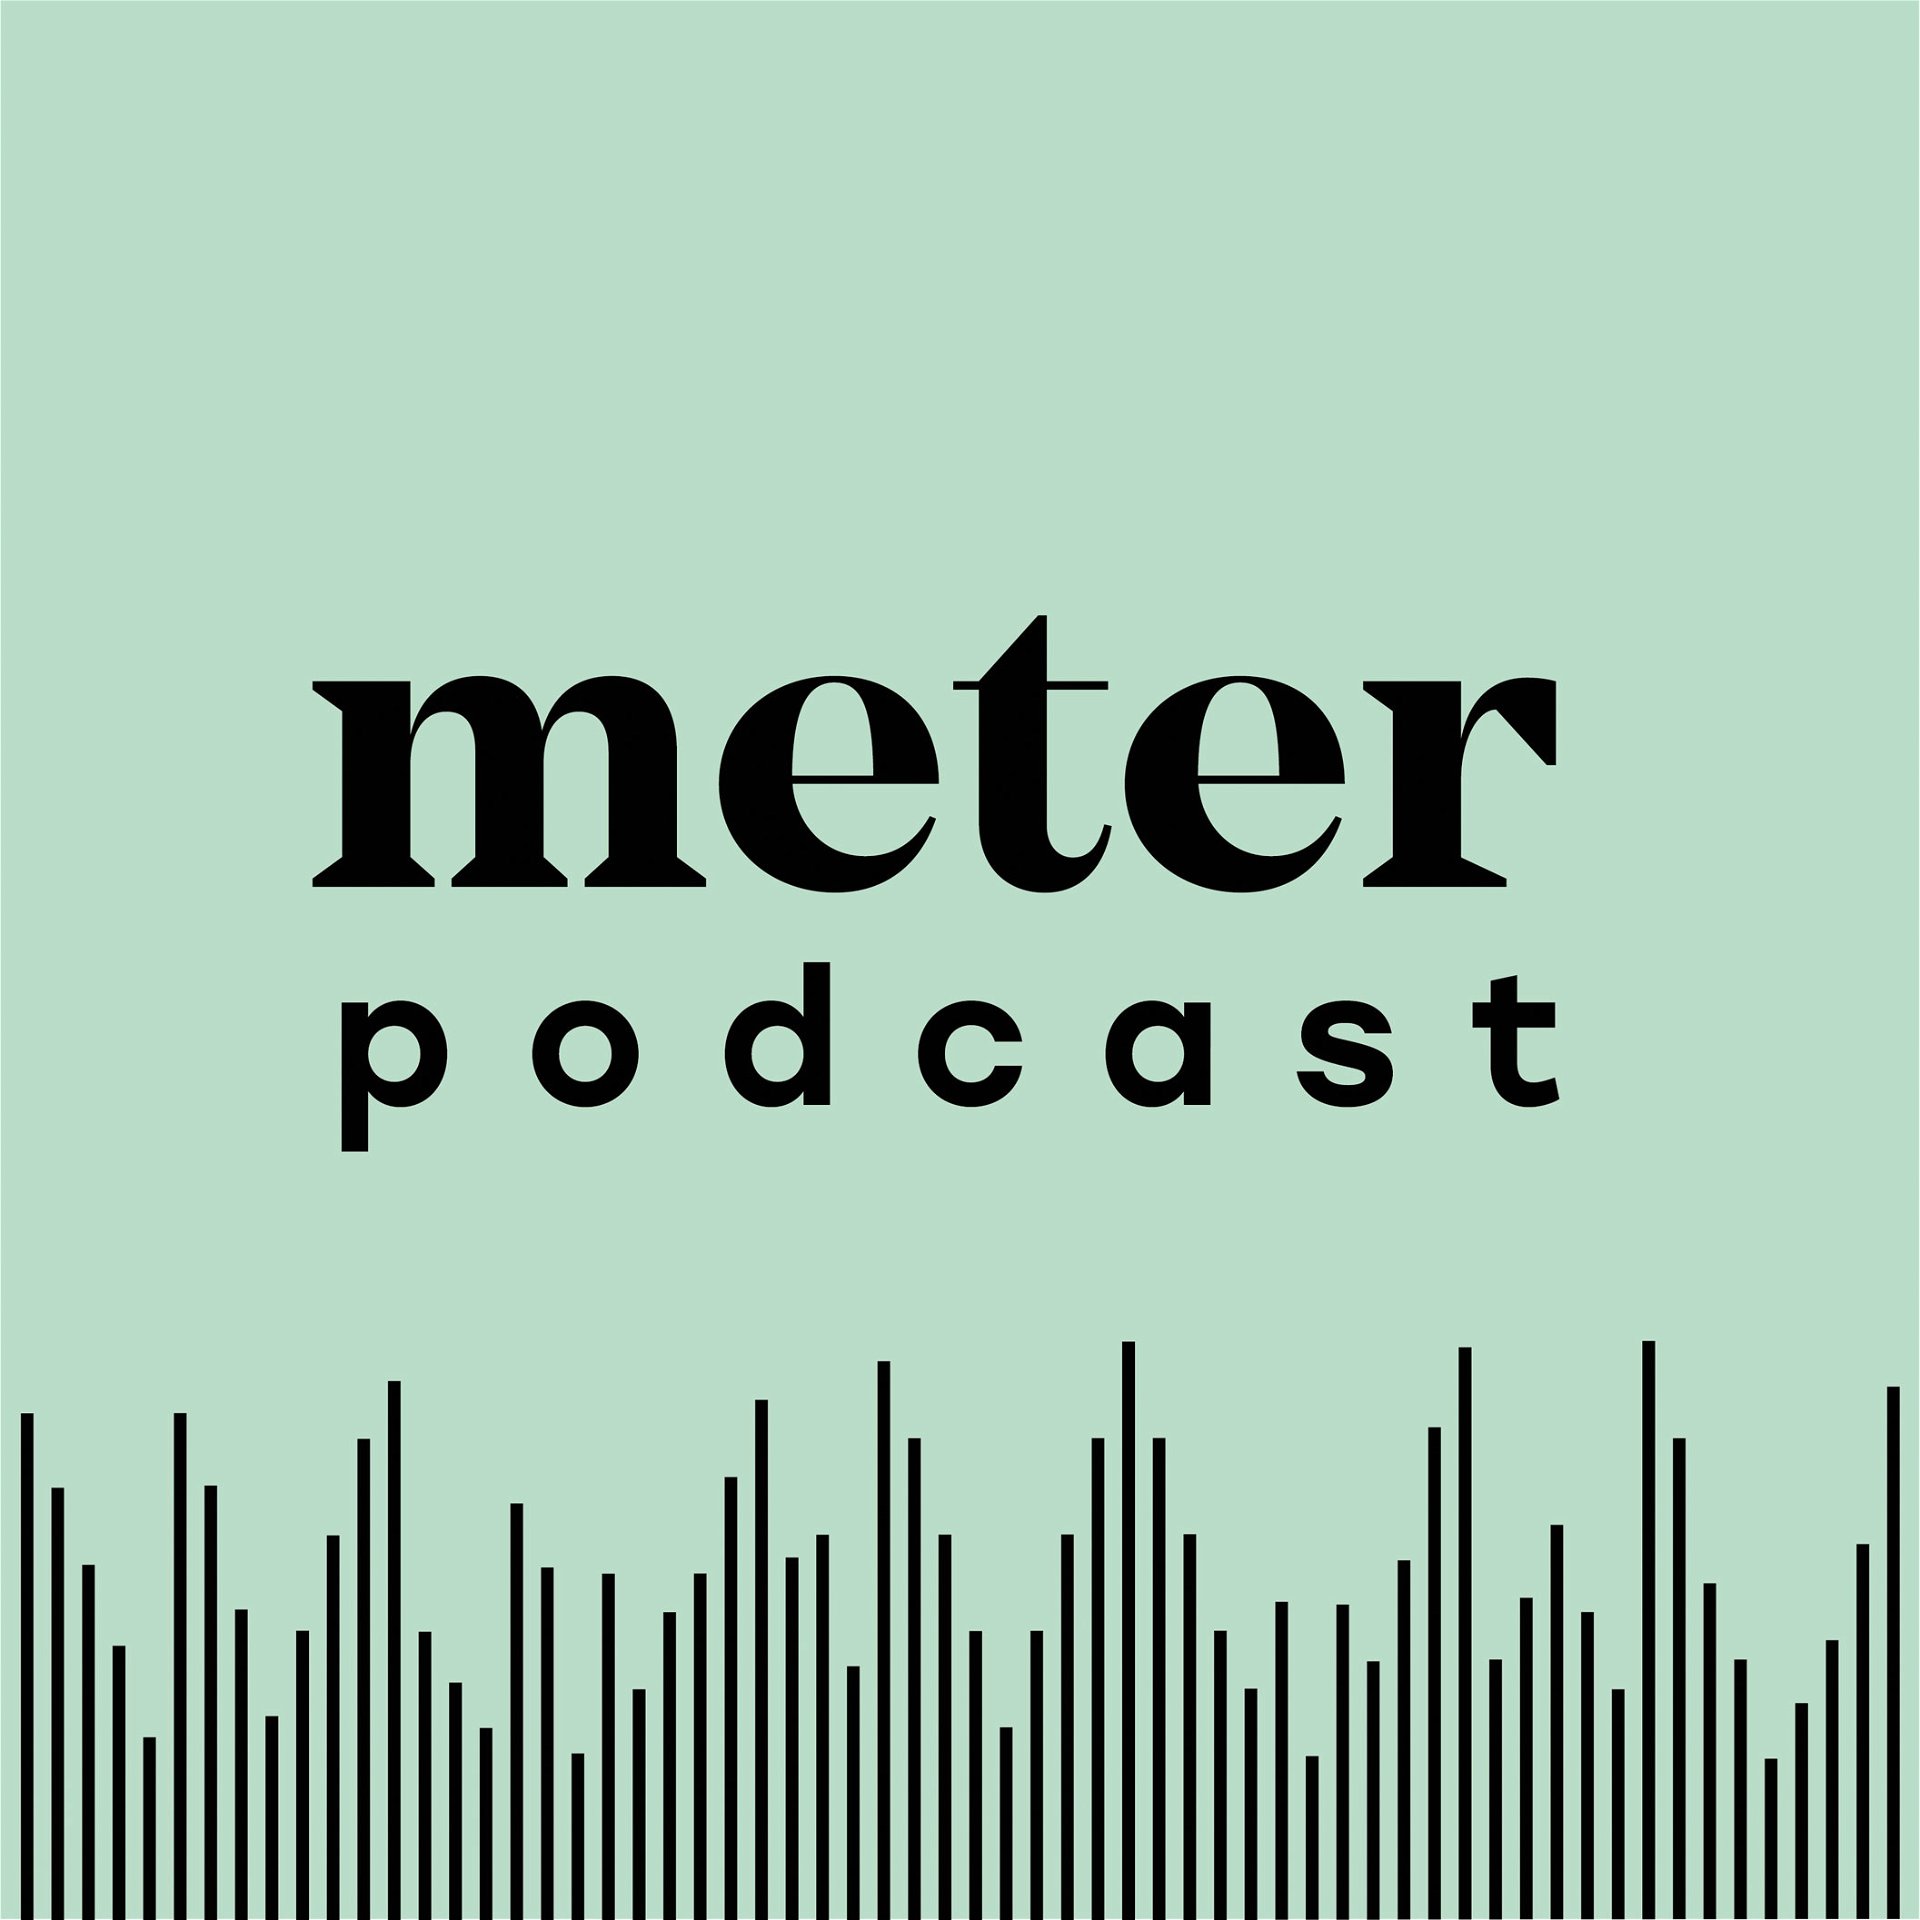 Meter-Podcast: Spannende Einblicke in die Welt der Gestaltung verspricht dieser Podcast, der erst seit kurzer Zeit auf Sendung ist. Monatlich werden Szene-größen zum ausführlichen Gespräch geladen. Aktuell kann man etwa Interviews mit Konstantin Grcic, This -Weber und Peter Wirz nachhören. 